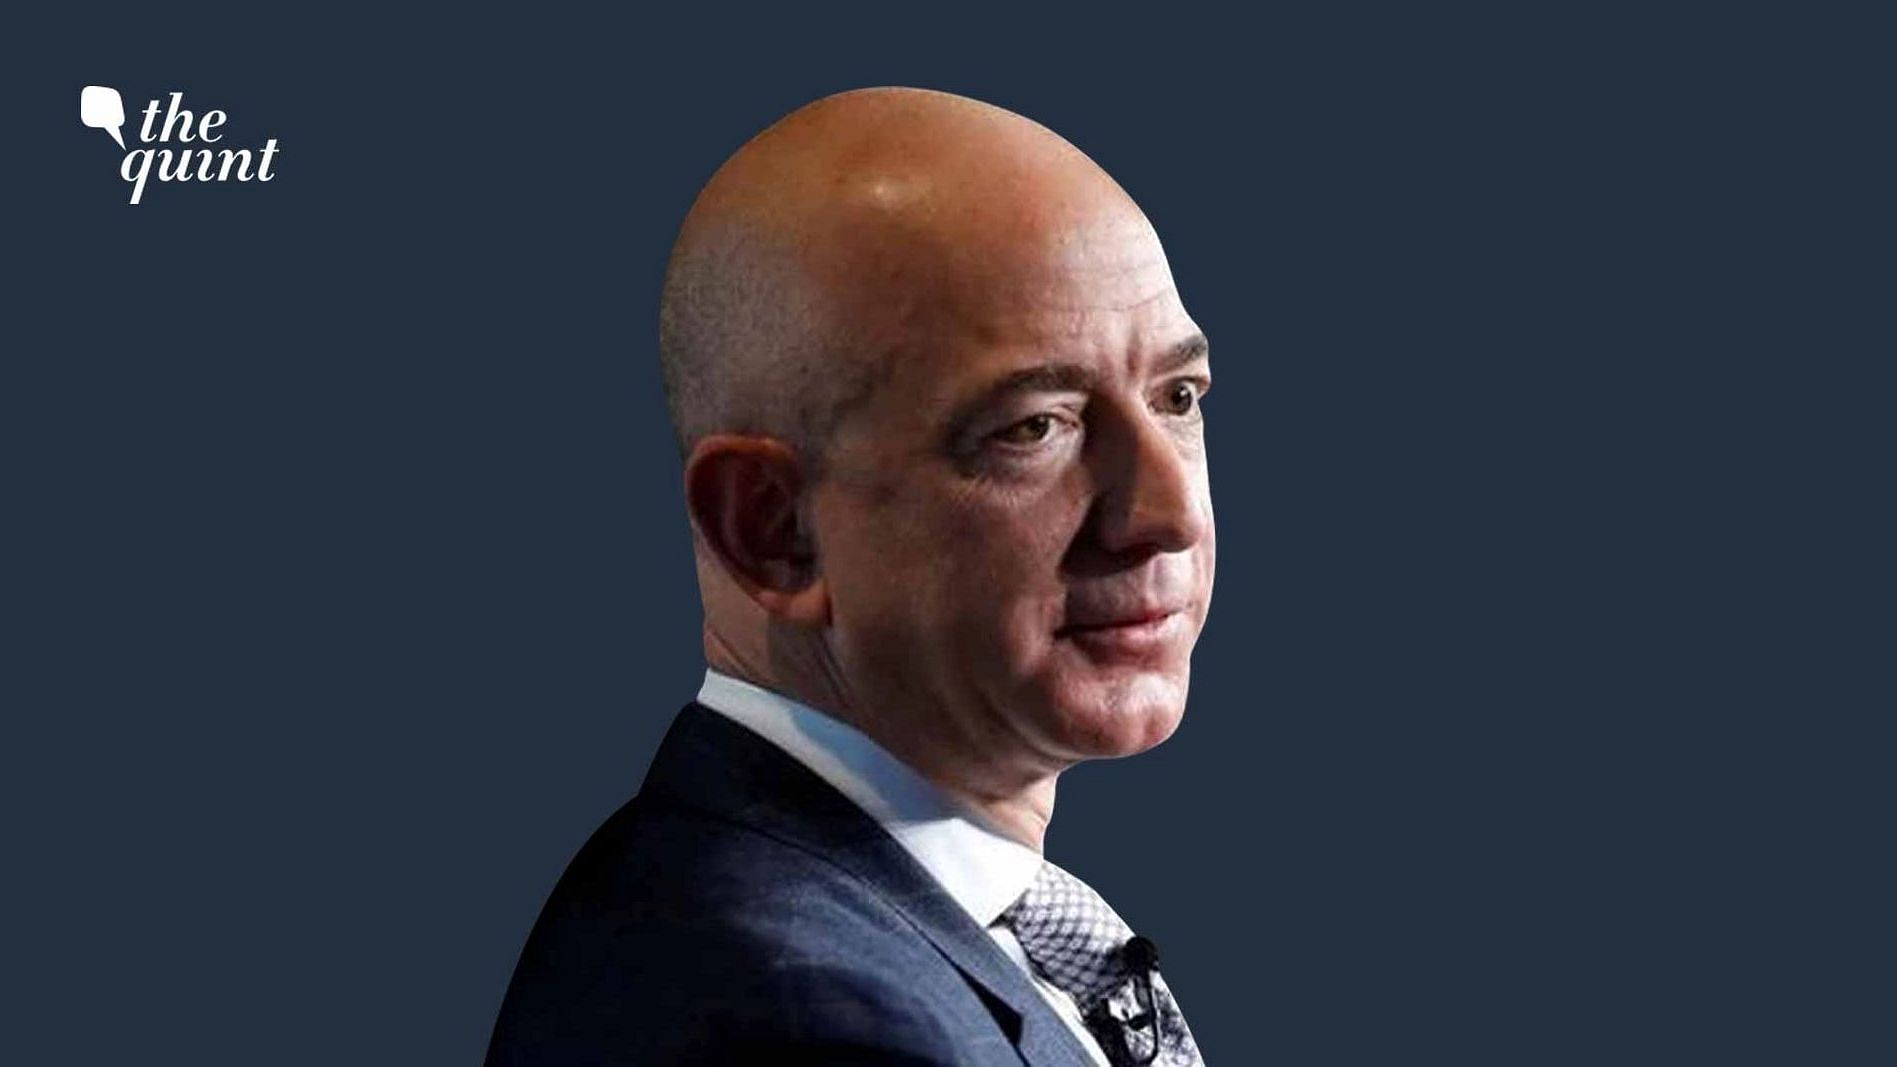 <div class="paragraphs"><p>Jeff Bezos, CEO, Amazon</p></div>